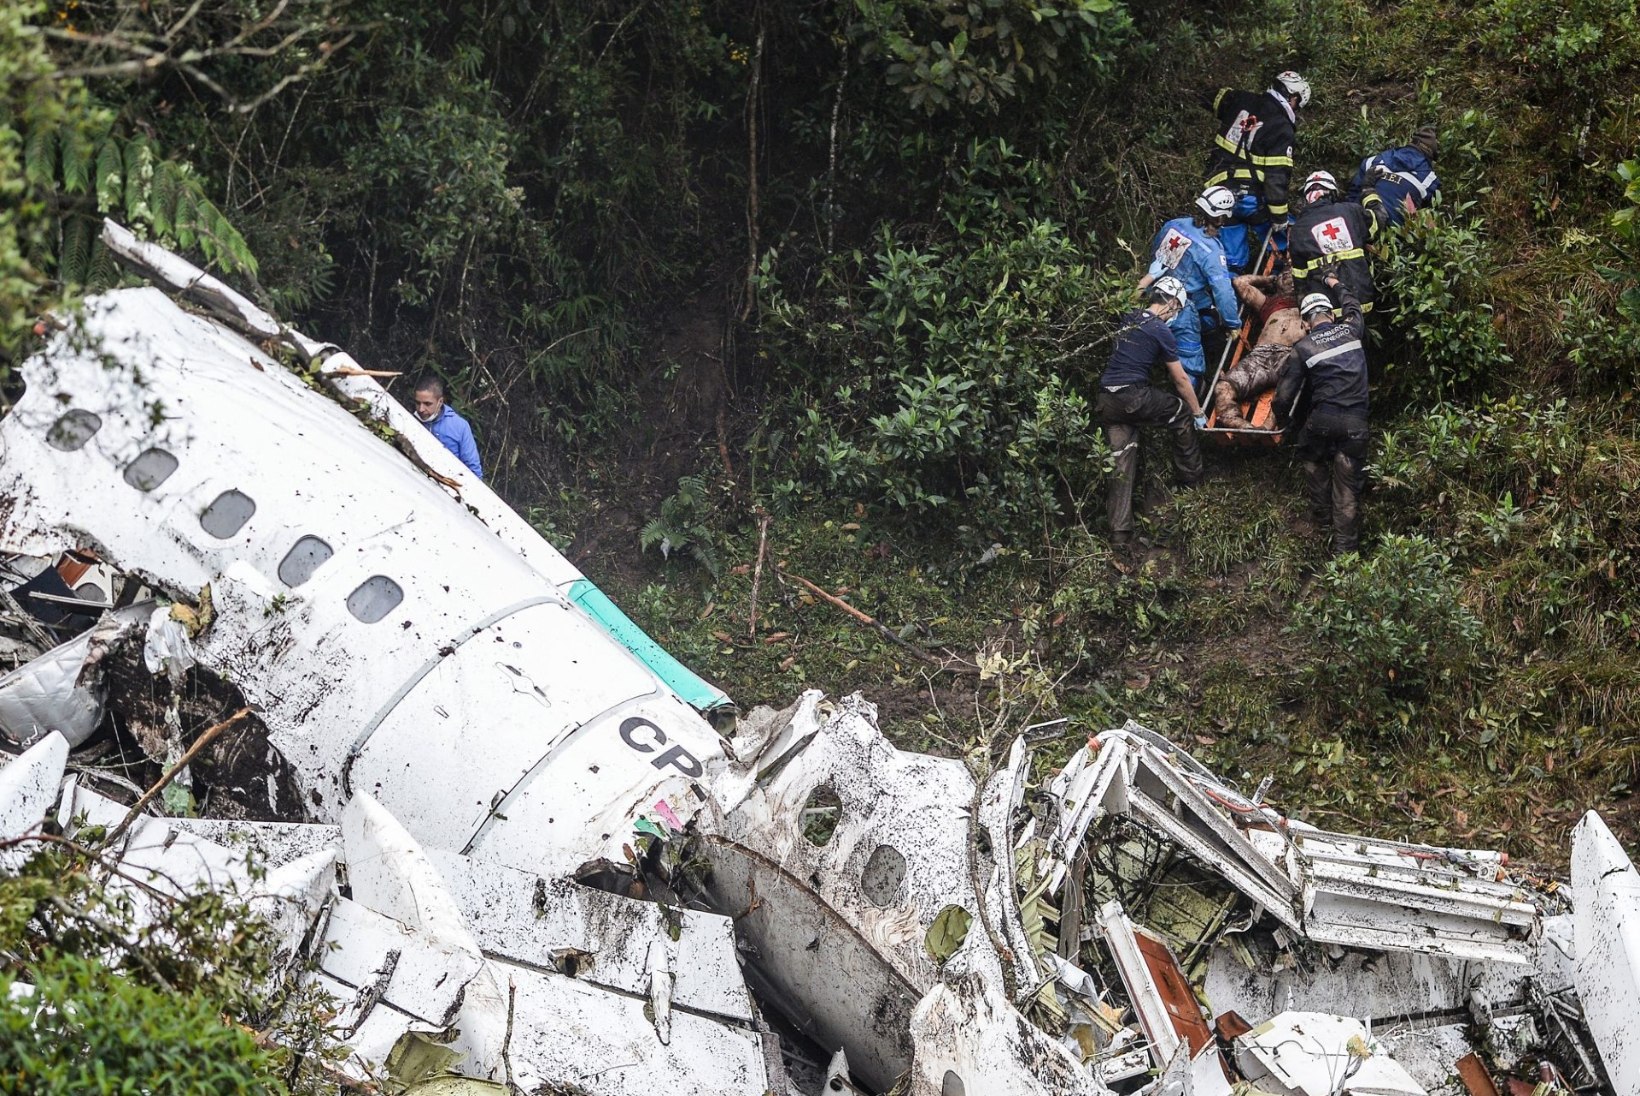 SÜÜDLASI OTSITAKSE: Chapecoense pallurid surma viinud lennufirma tegevdirektor võeti vahi alla, lennujuht põgenes 